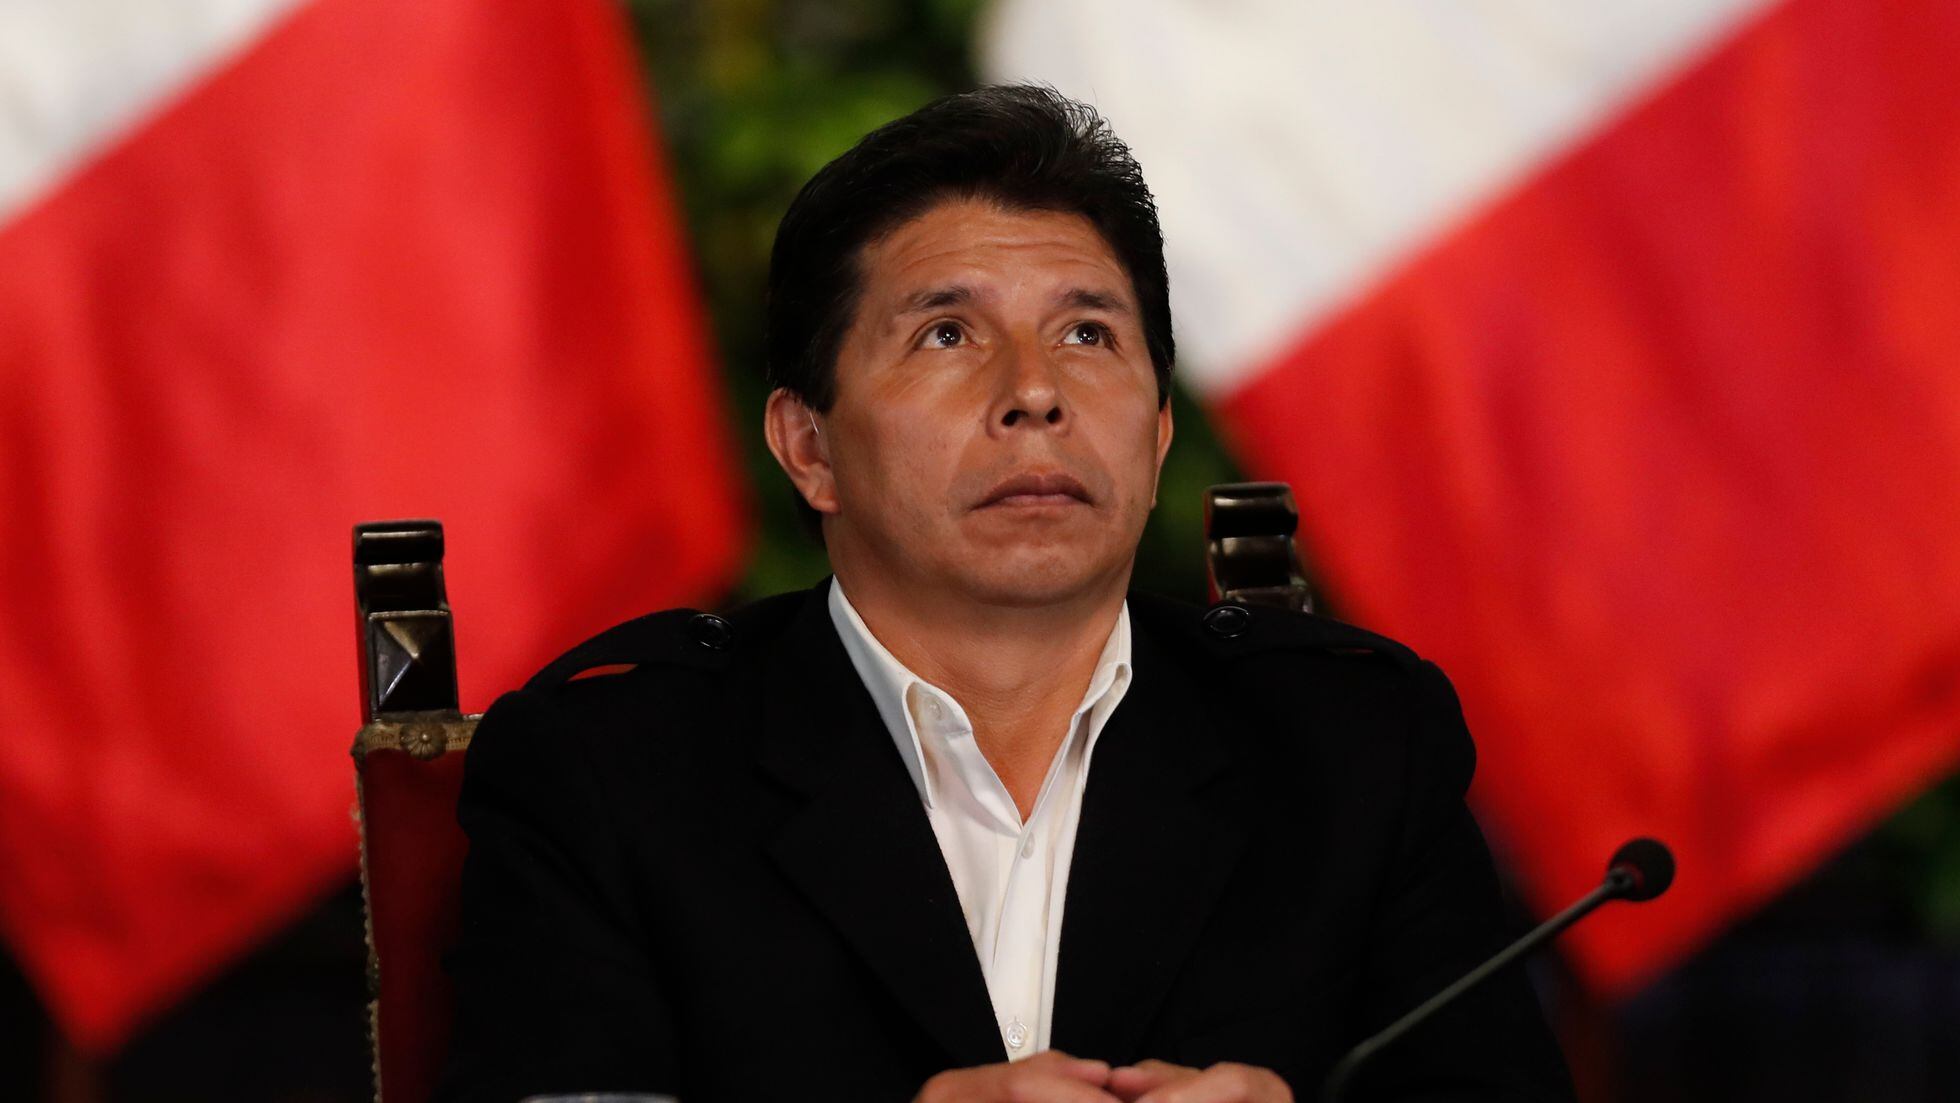 La Fiscalía de Perú denuncia al presidente Pedro Castillo y lo acusa de liderar una organización criminal | Internacional | EL PAÍS